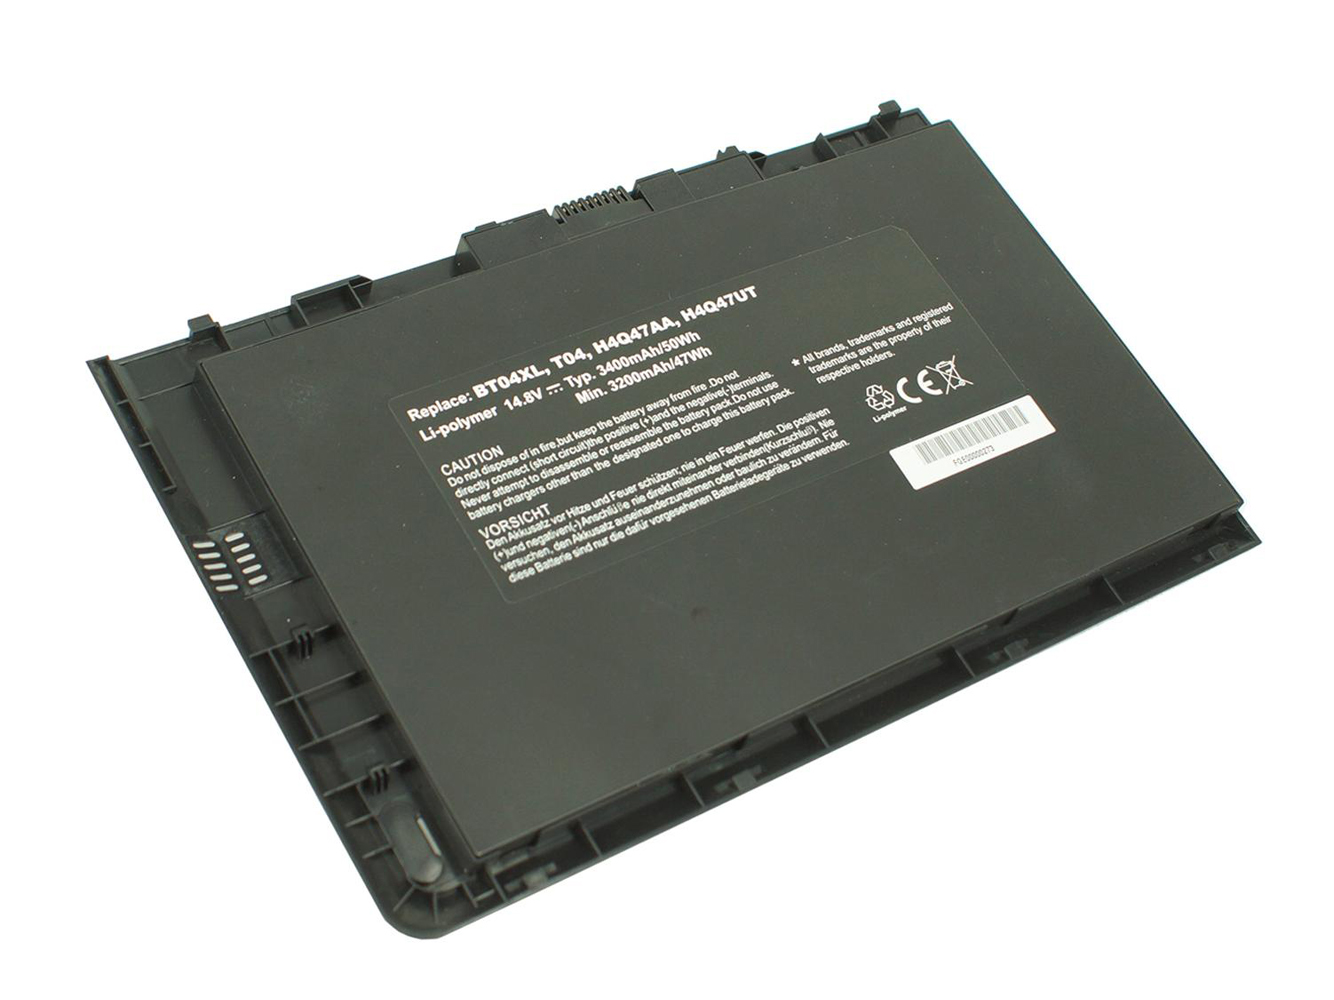 Kompatibler Ersatz für HP EliteBook 9470m, EliteBook Folio 9470m, EliteBook Folio 9470m Ultrabook Laptop Akku